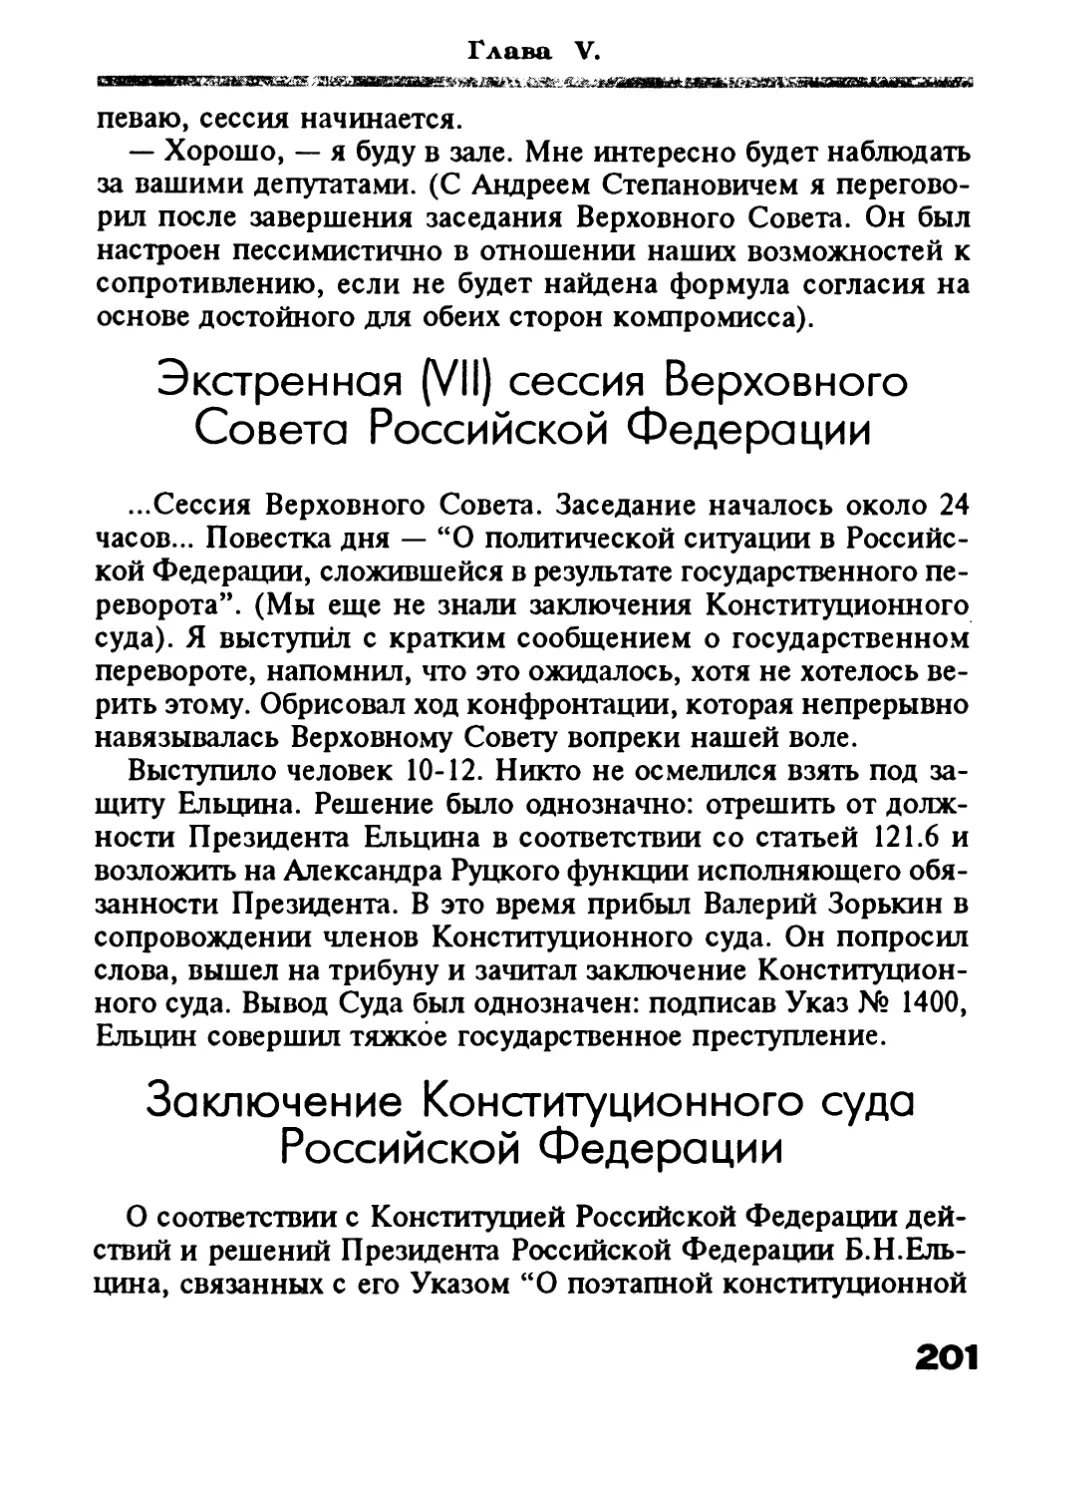 Заключение Конституционного суда Российской Федерации